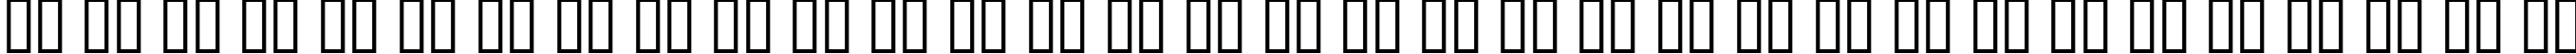 Пример написания русского алфавита шрифтом Enge Holzschrift